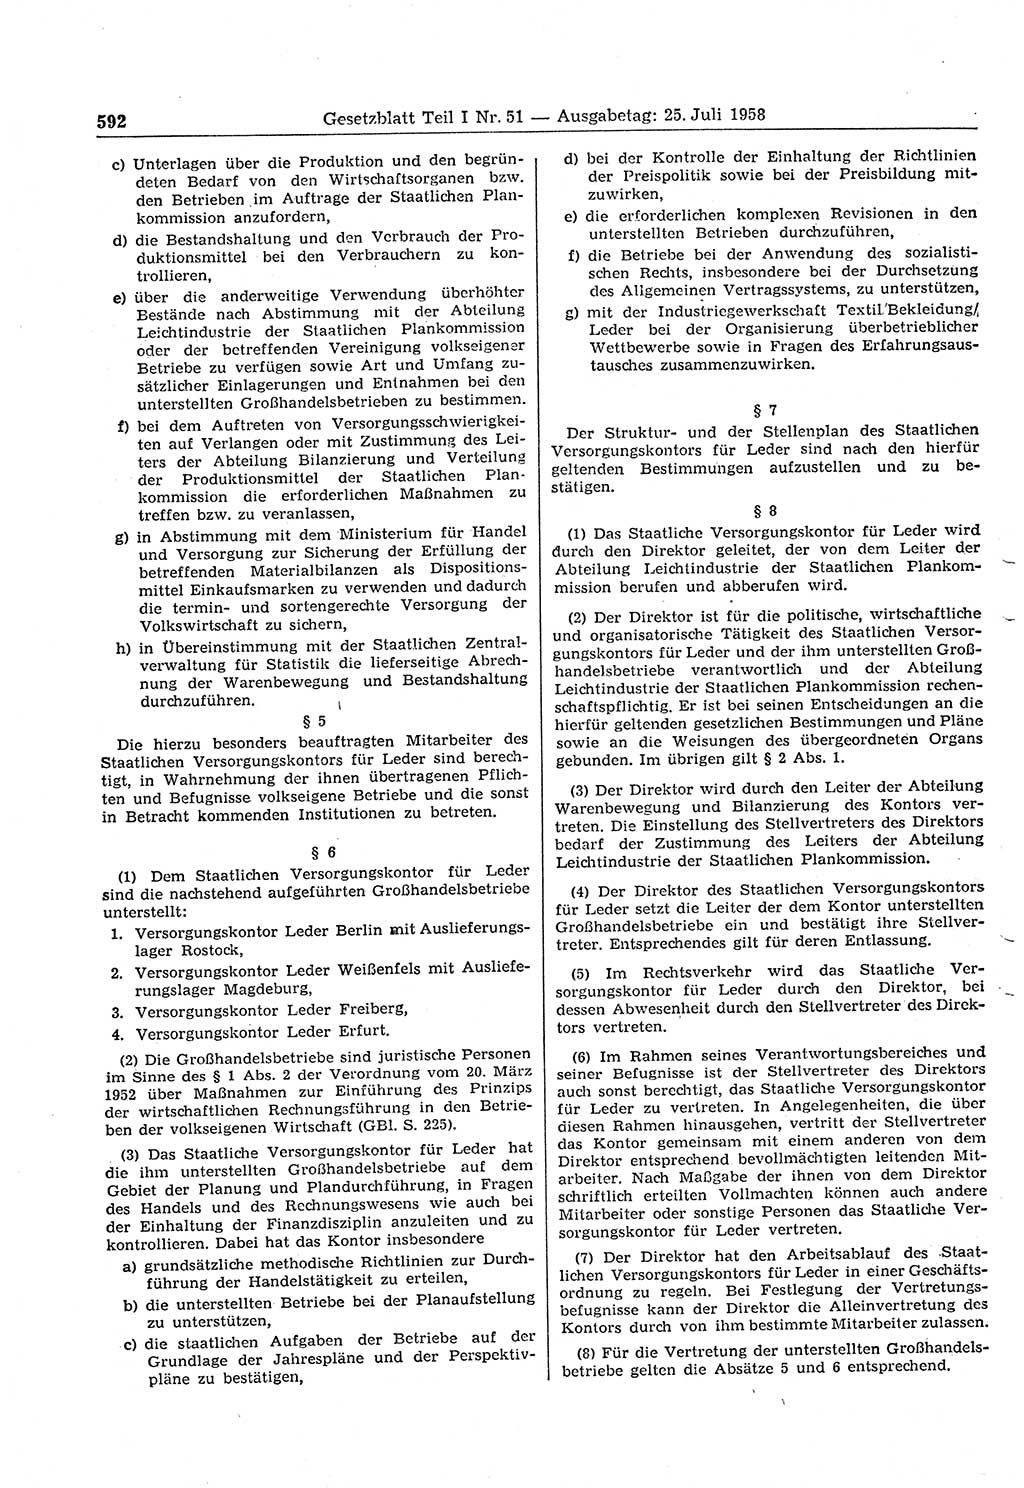 Gesetzblatt (GBl.) der Deutschen Demokratischen Republik (DDR) Teil Ⅰ 1958, Seite 592 (GBl. DDR Ⅰ 1958, S. 592)